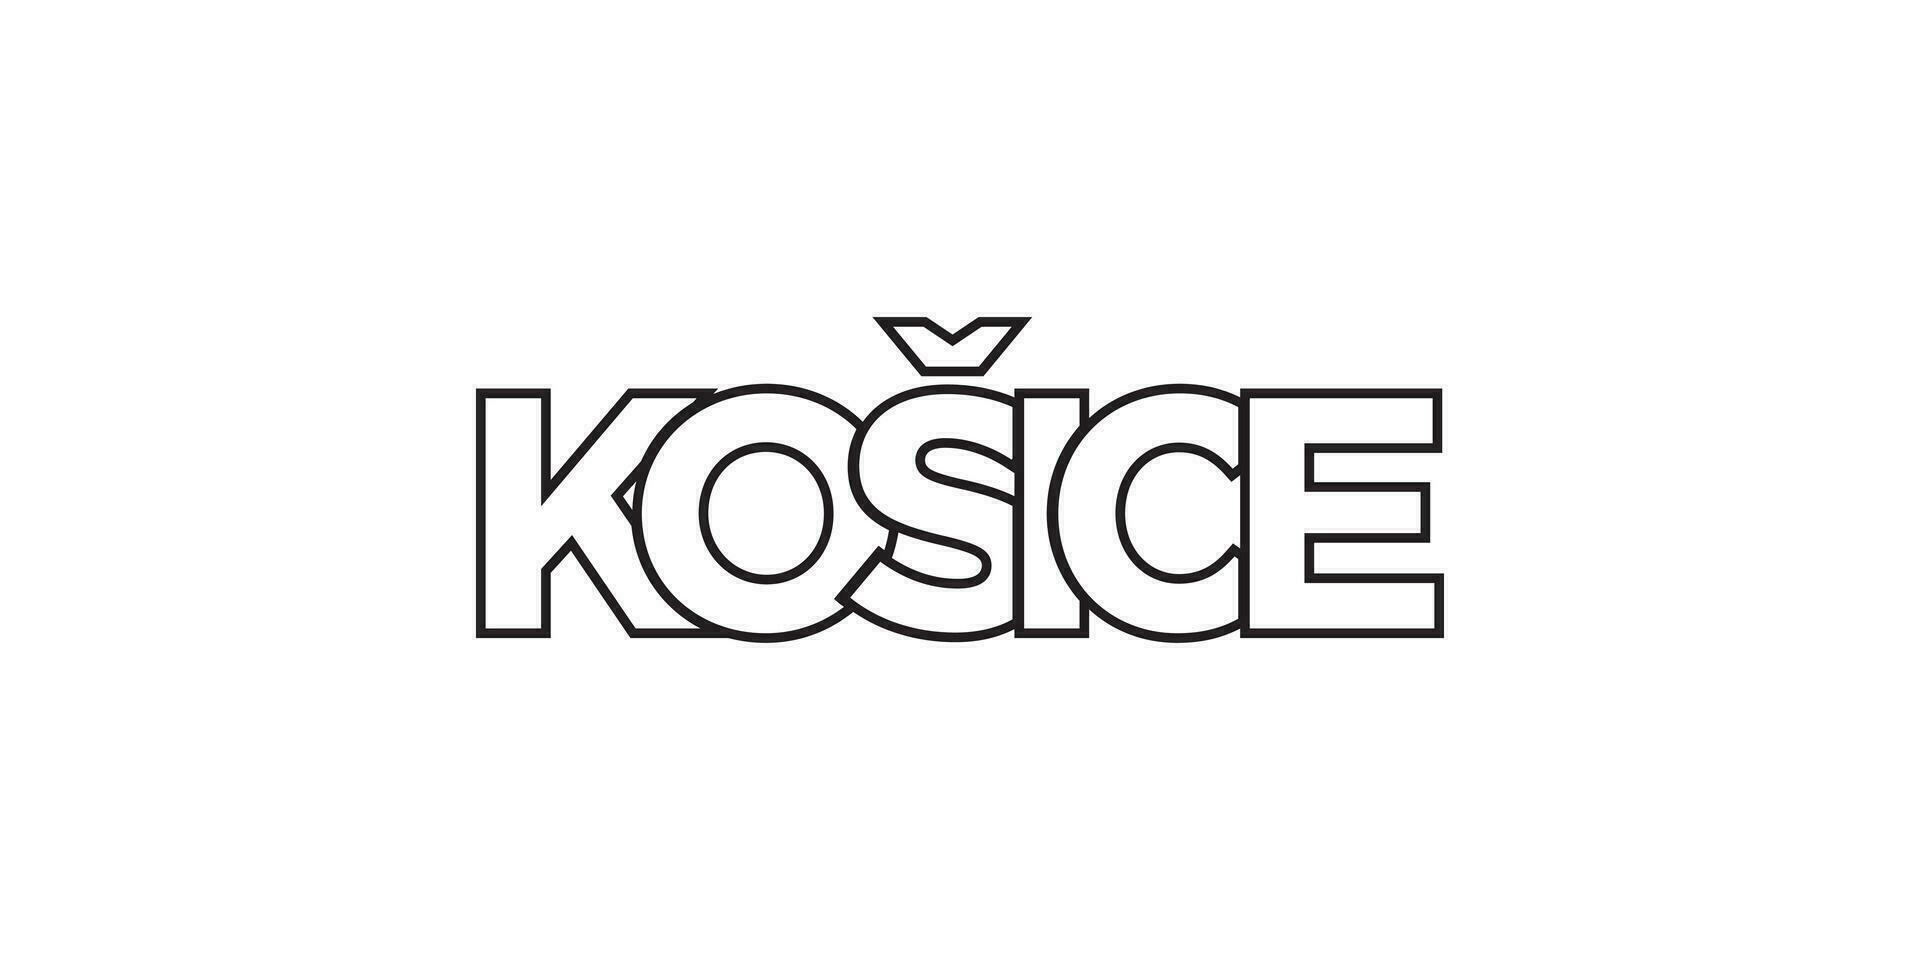 Kosice im das Slowakei Emblem. das Design Eigenschaften ein geometrisch Stil, Vektor Illustration mit Fett gedruckt Typografie im ein modern Schriftart. das Grafik Slogan Beschriftung.